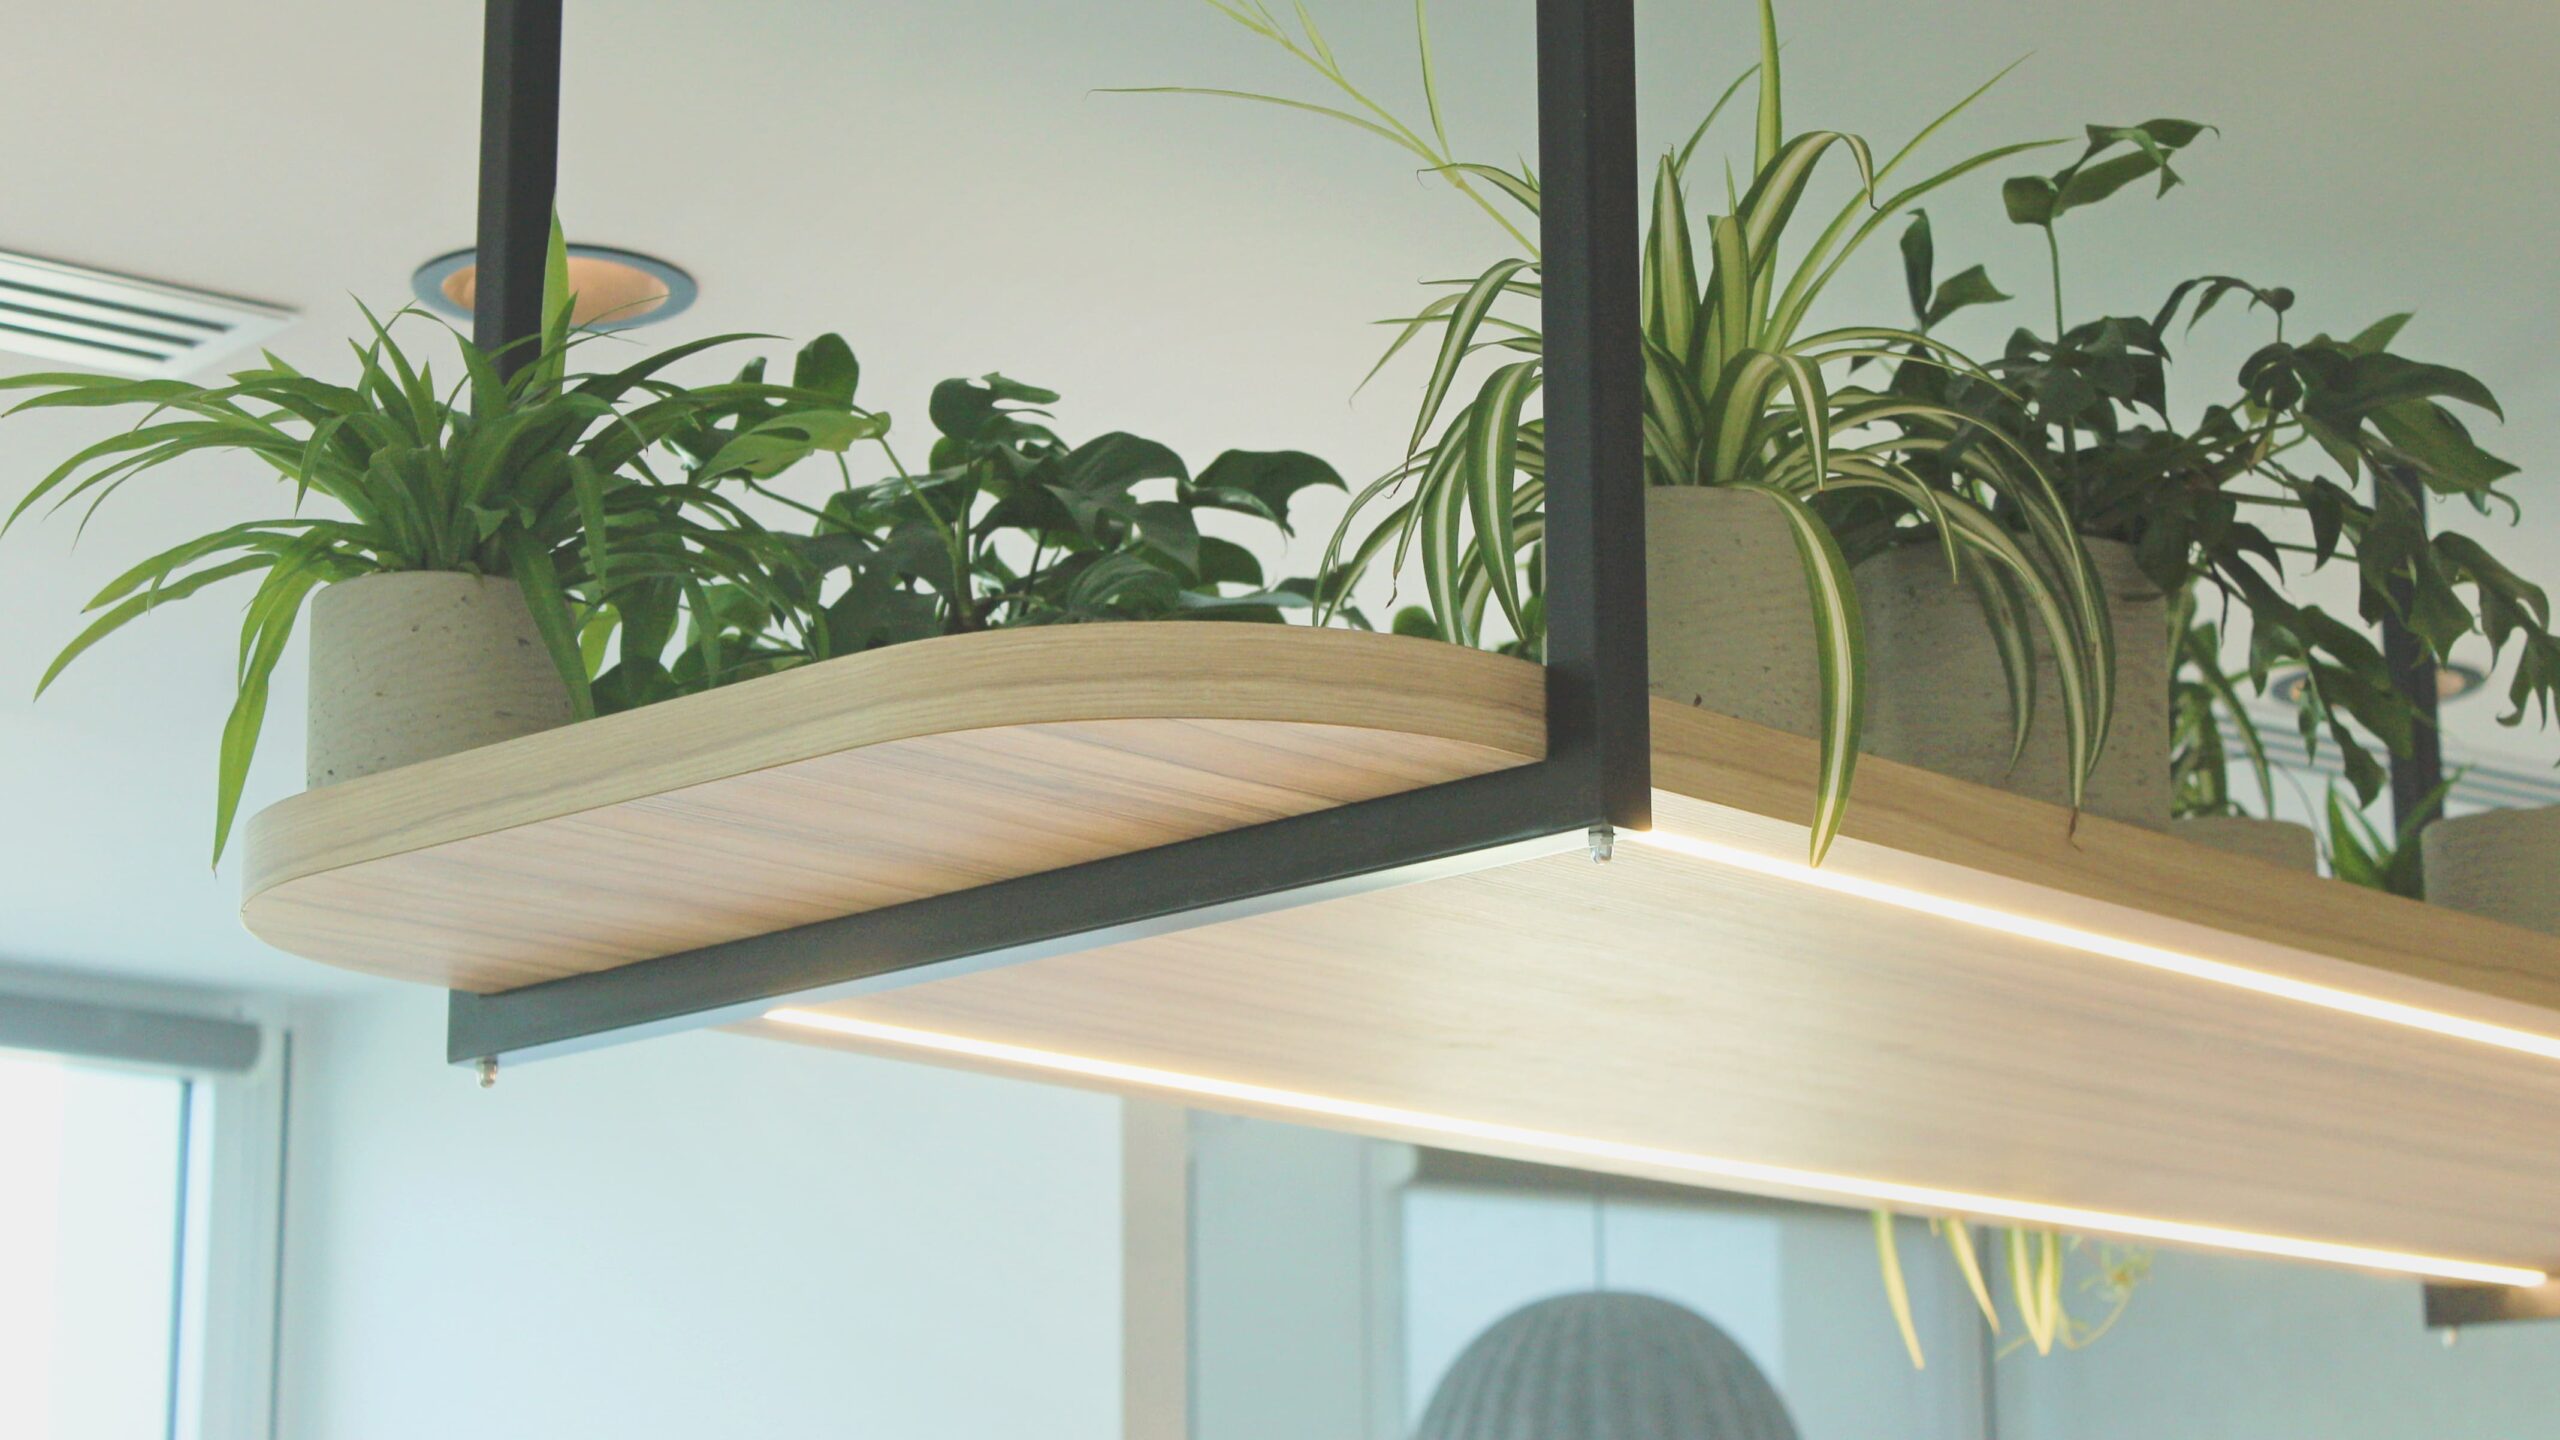 Plantes d'intérieur luxuriantes en pots suspendues au plafond sur une planche en bois dans une cafétéria